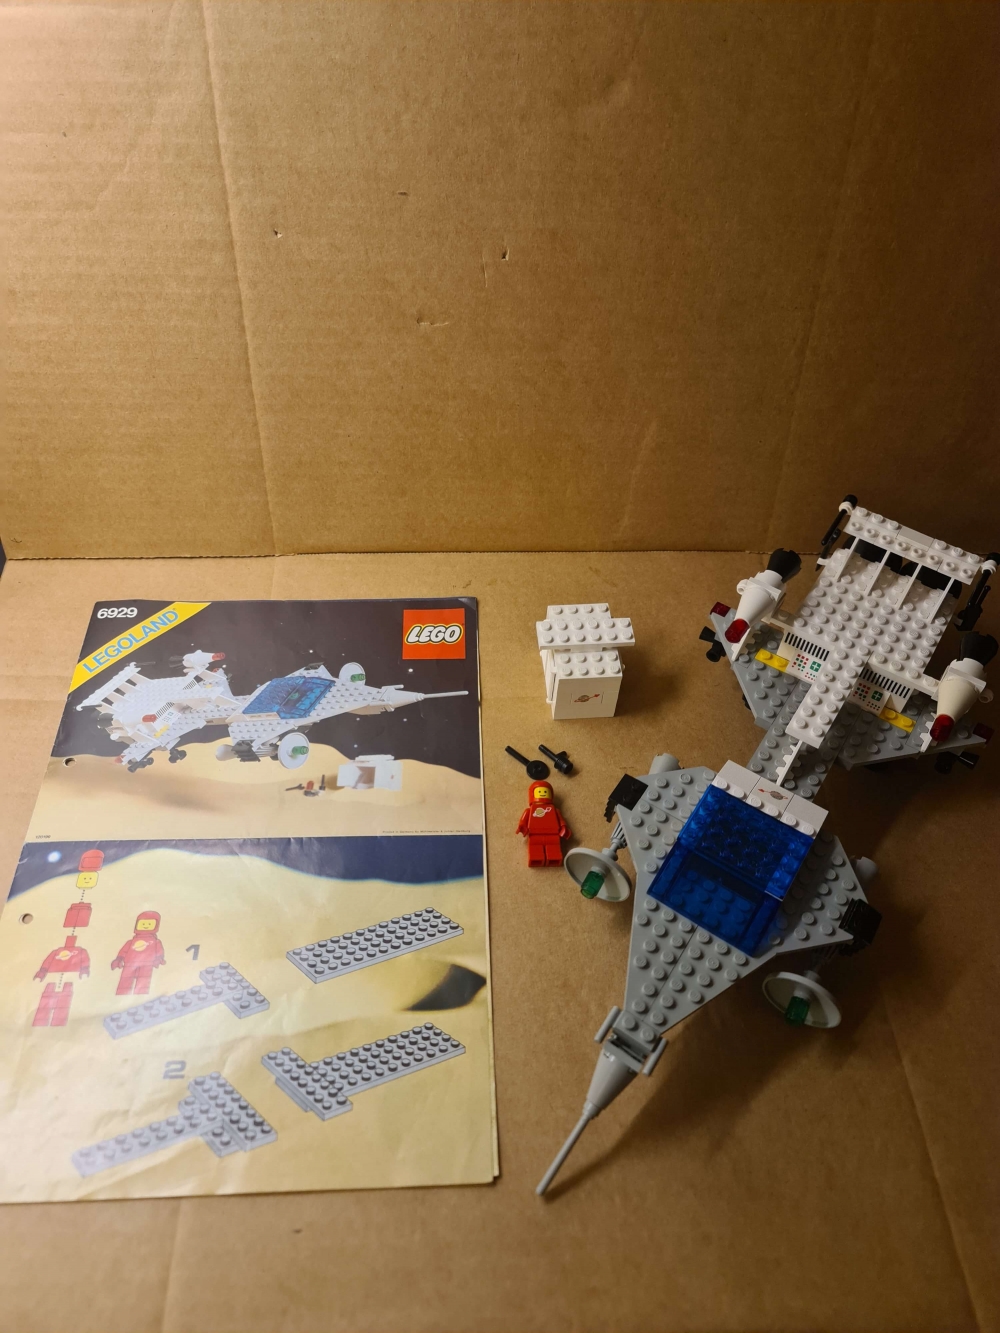 Sett 6929 fra Lego Classic Space serien.
Meget pent sett. Ikke mye misfarging å spore her. 
100% komplett med manual. 